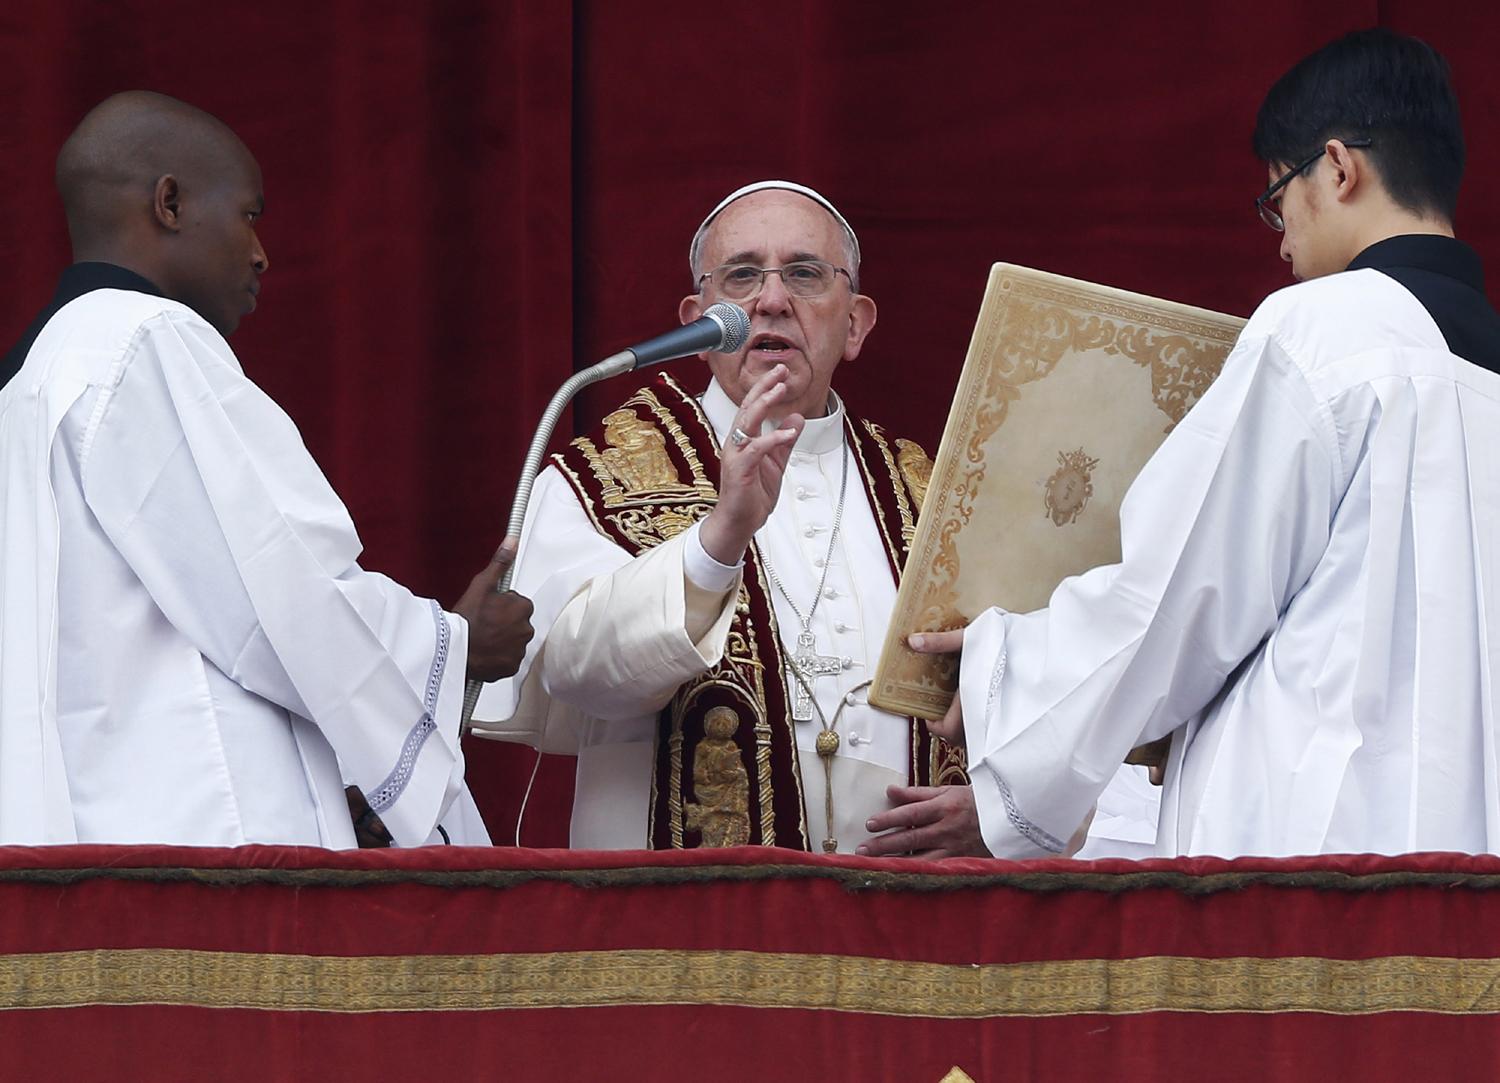 Ferenc pápa az Urbi et Orbi áldás közben. Világiasság, közöny